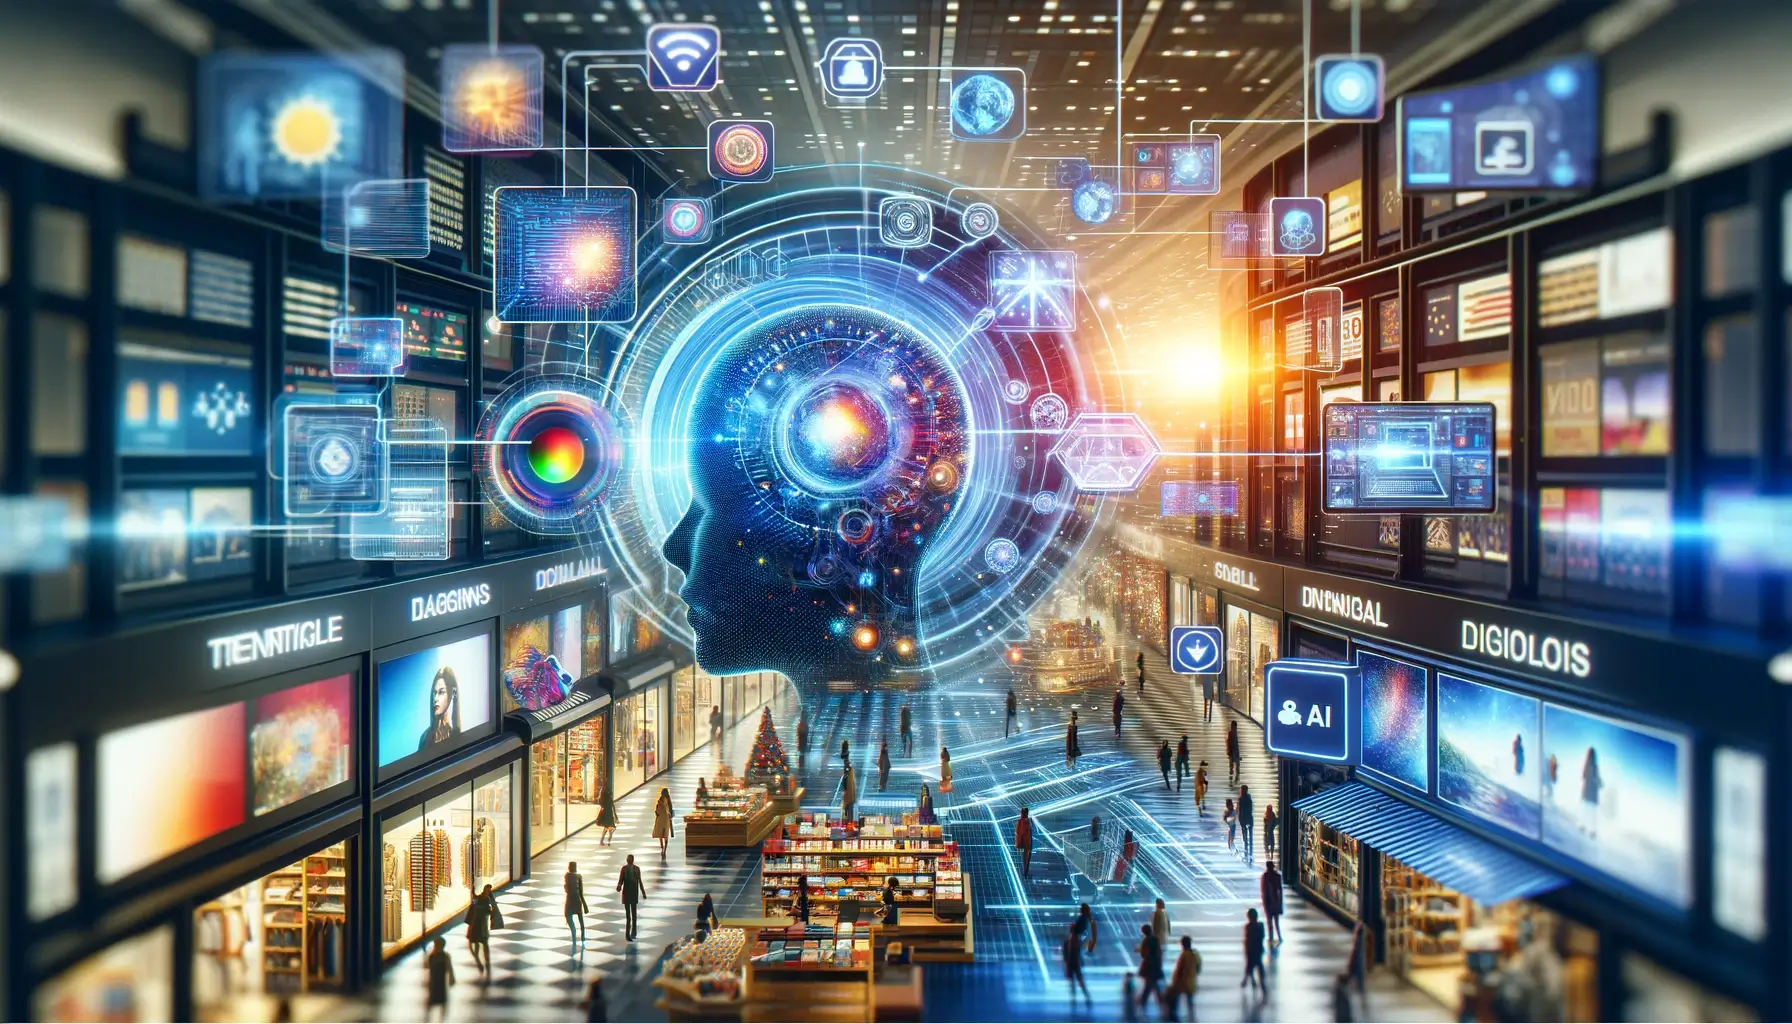 Abbildung einer dynamischen und farbenfrohen Szenerie, die die Innovation der KI-Technologie im Bereich der Einzelhandelswerbung symbolisiert, mit digitalen Bannern und interaktiven Technologie-Interfaces in einer lebendigen Handelsumgebung.